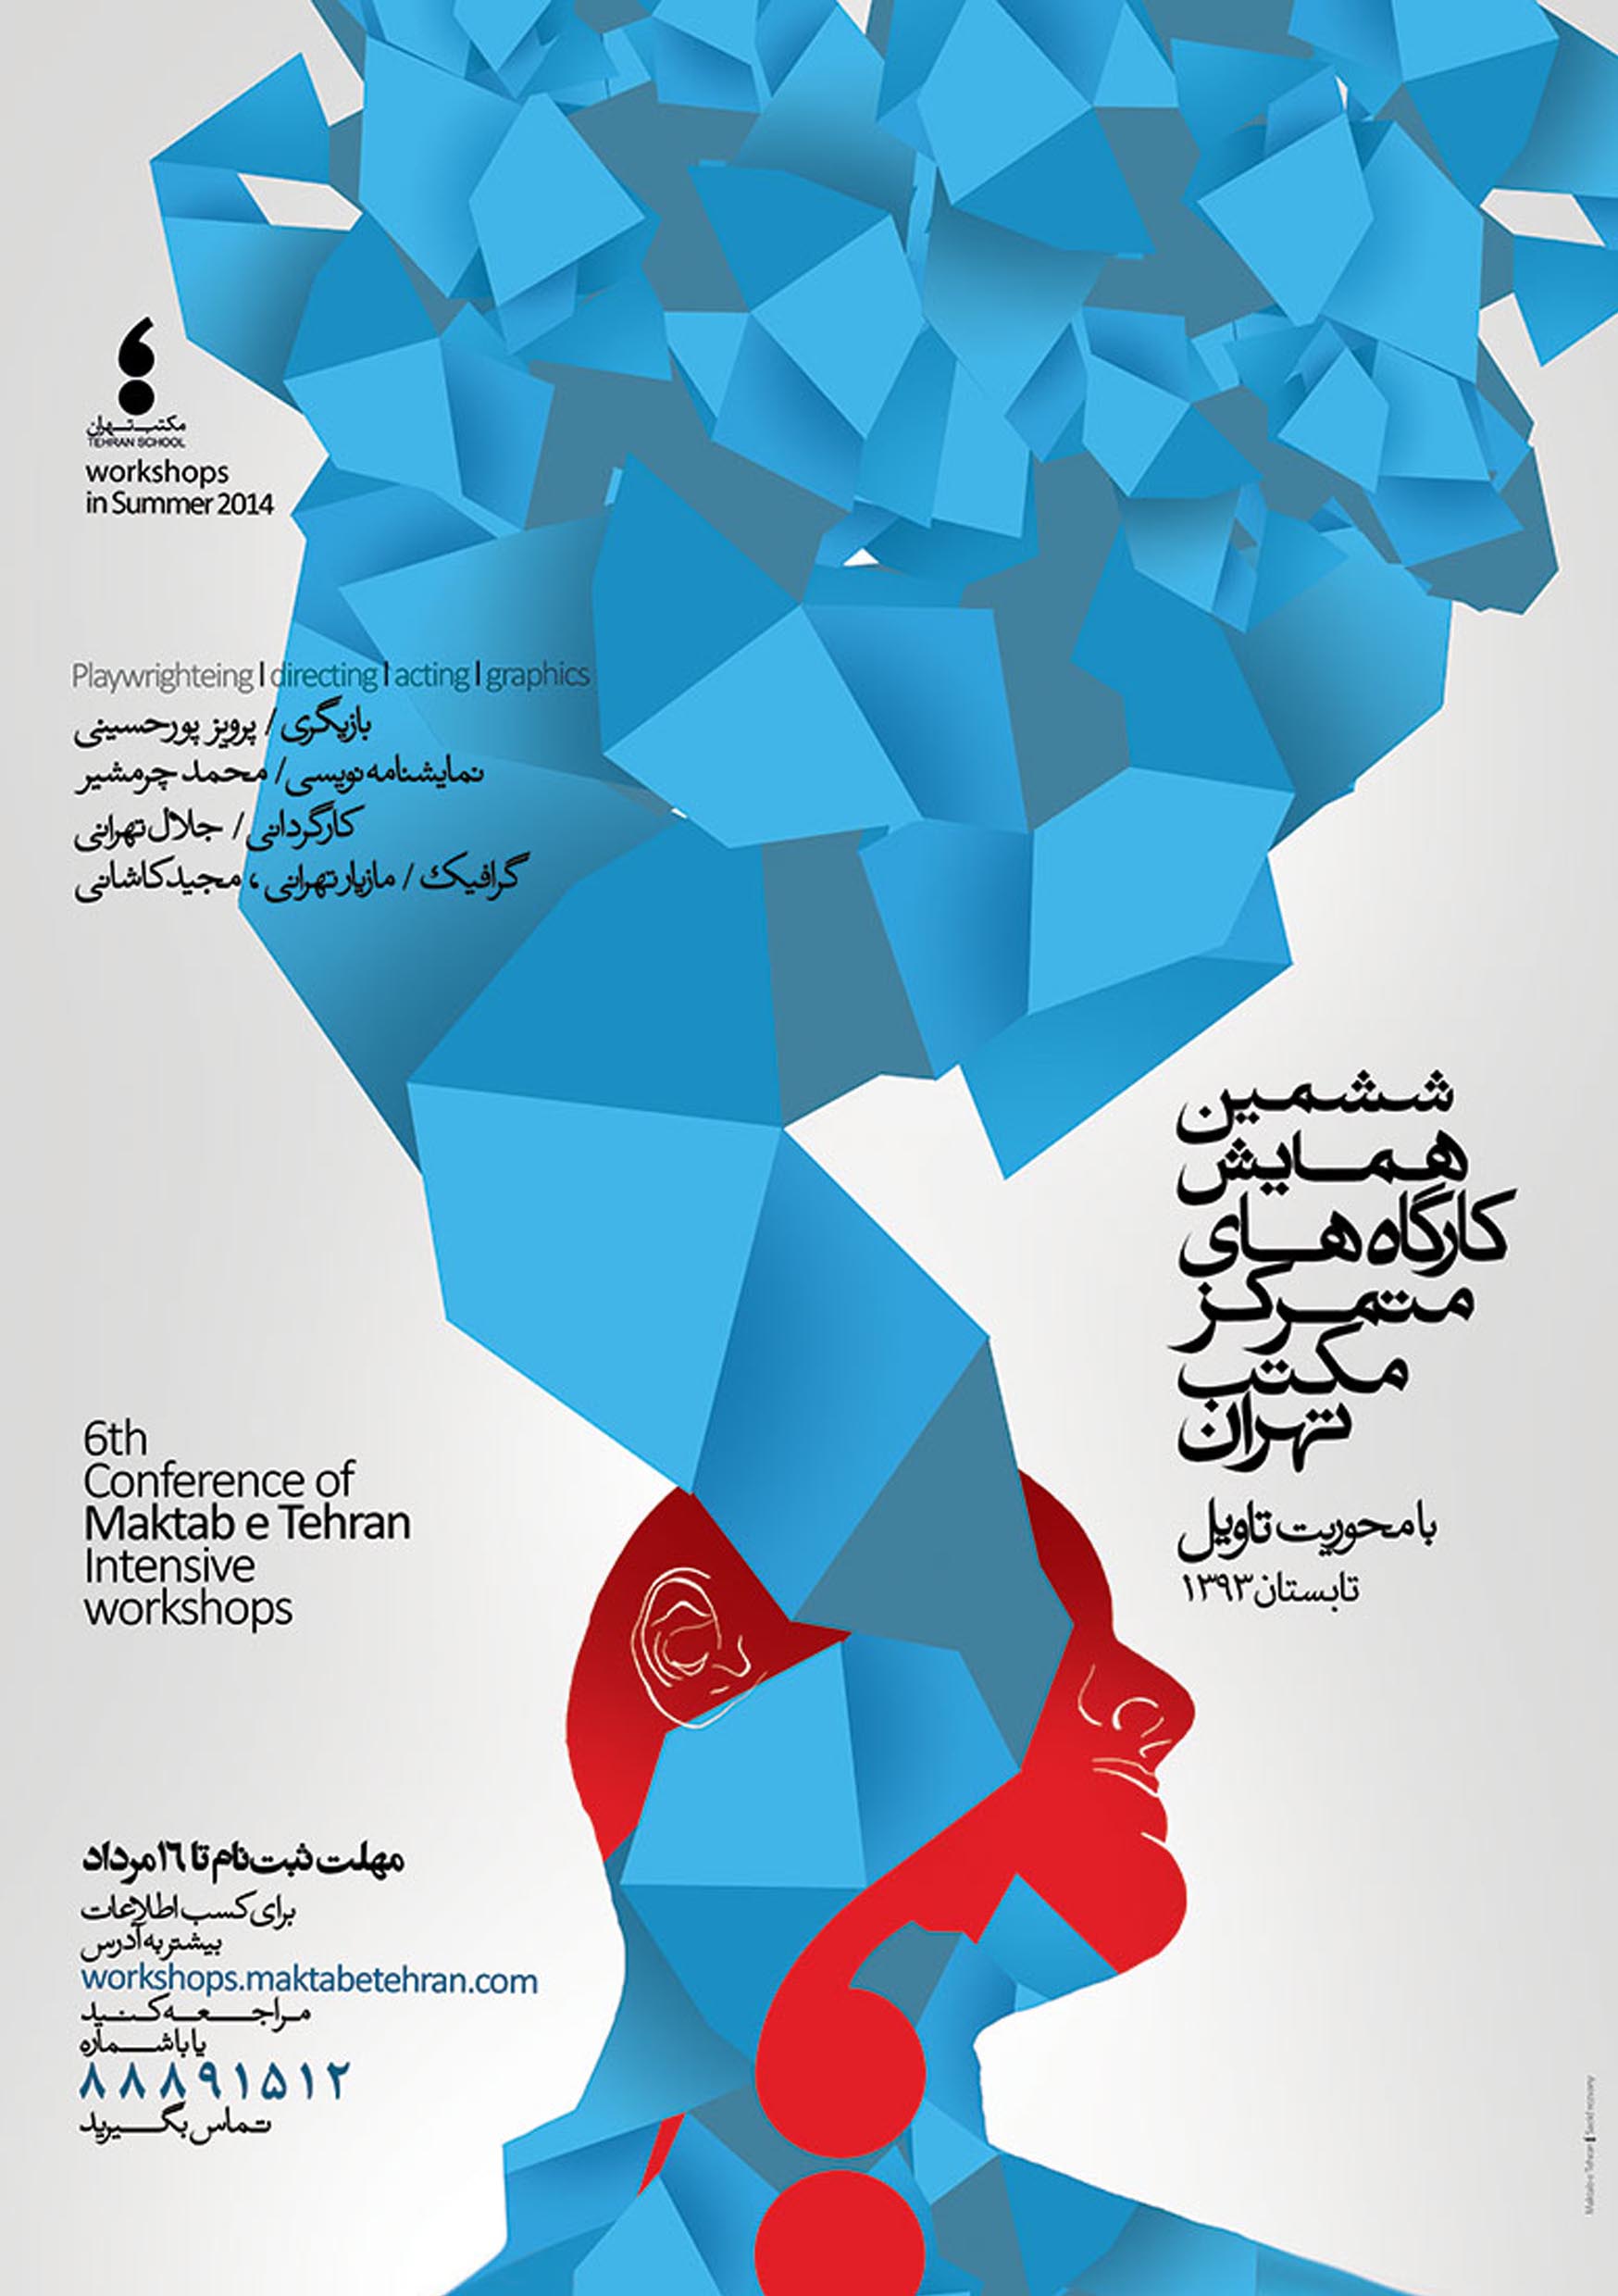 پوستر دوره ششم کارگاه های متمرکز مکتب تهران